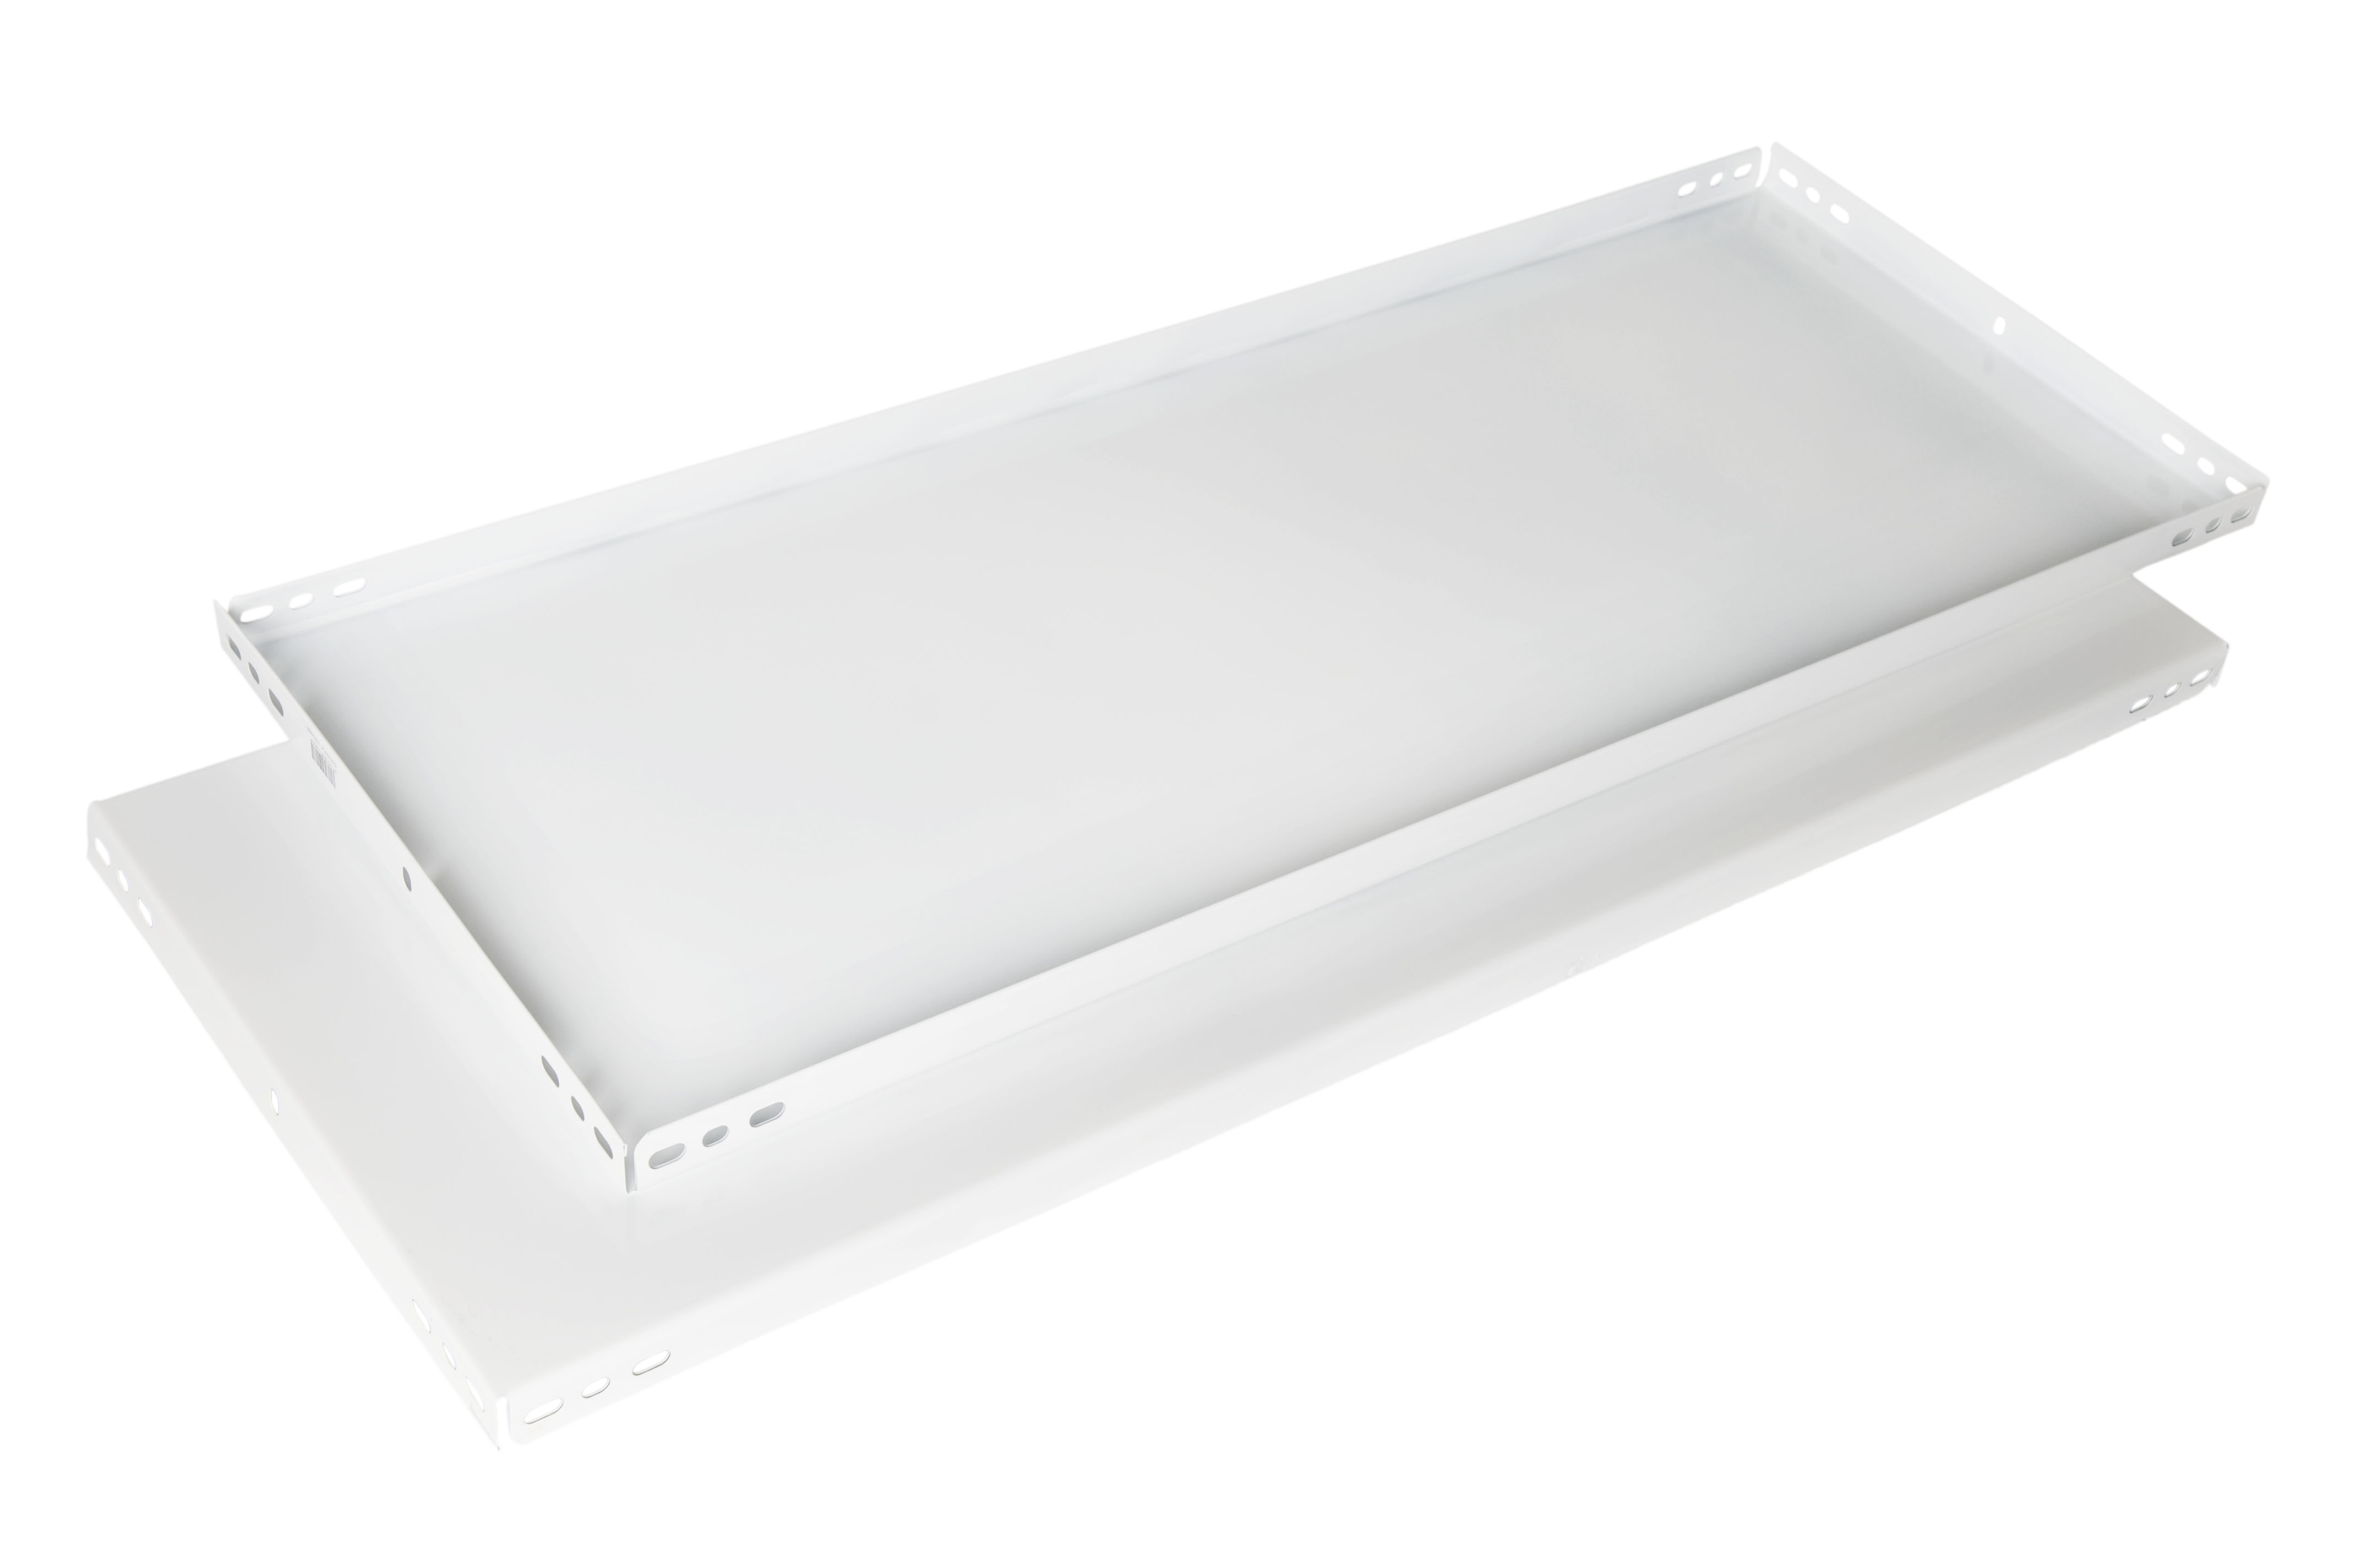 Balda recta para sistema de estantes de acero blanco de 100x40cm